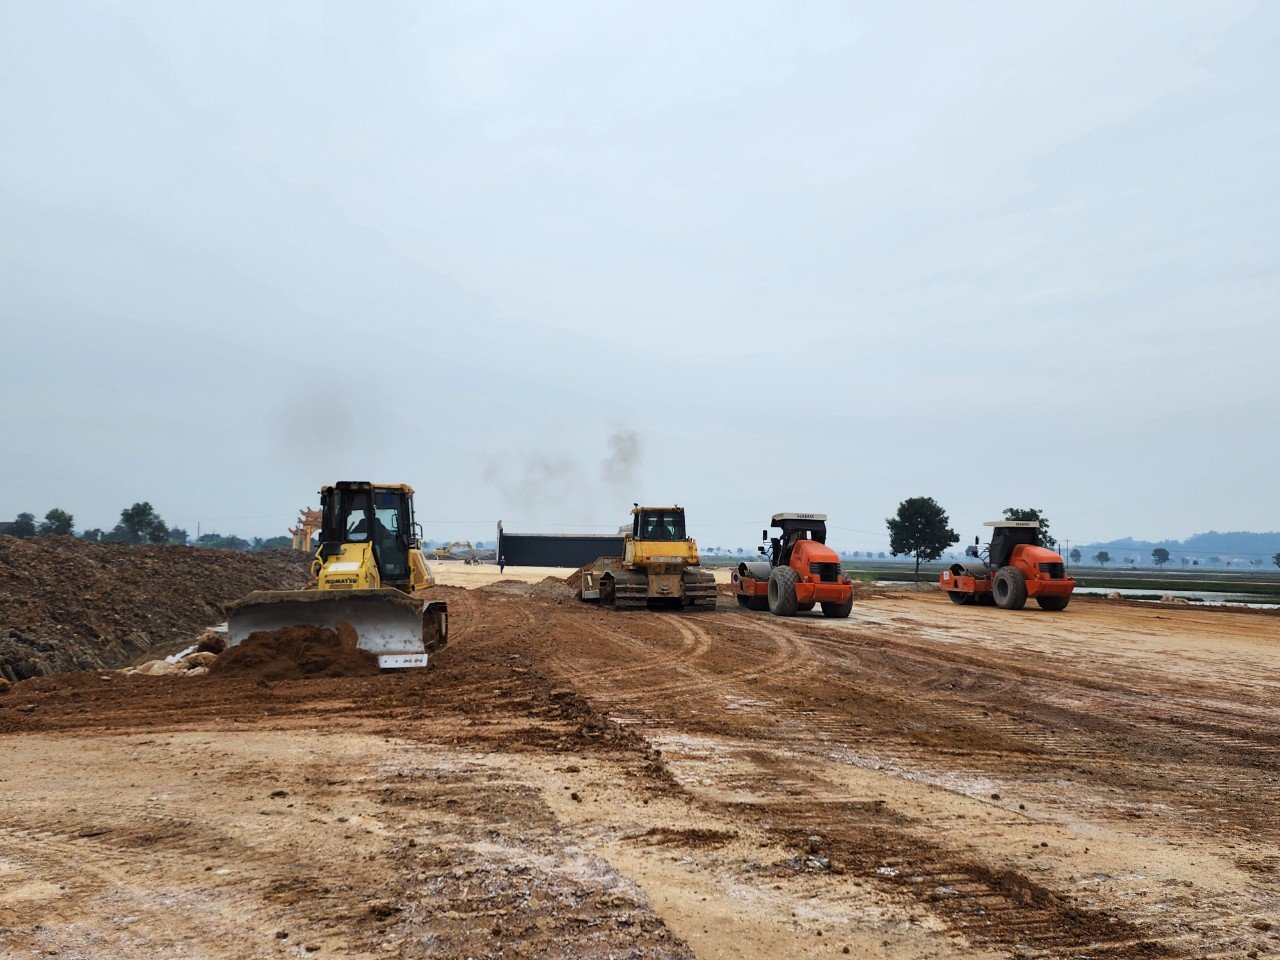 Nhà thầu Vinaconex bố trí nguồn lực thi công xong 7km nền đất yếu tại gói thầu XL11, Dự án Bãi Vọt - Hàm Nghi